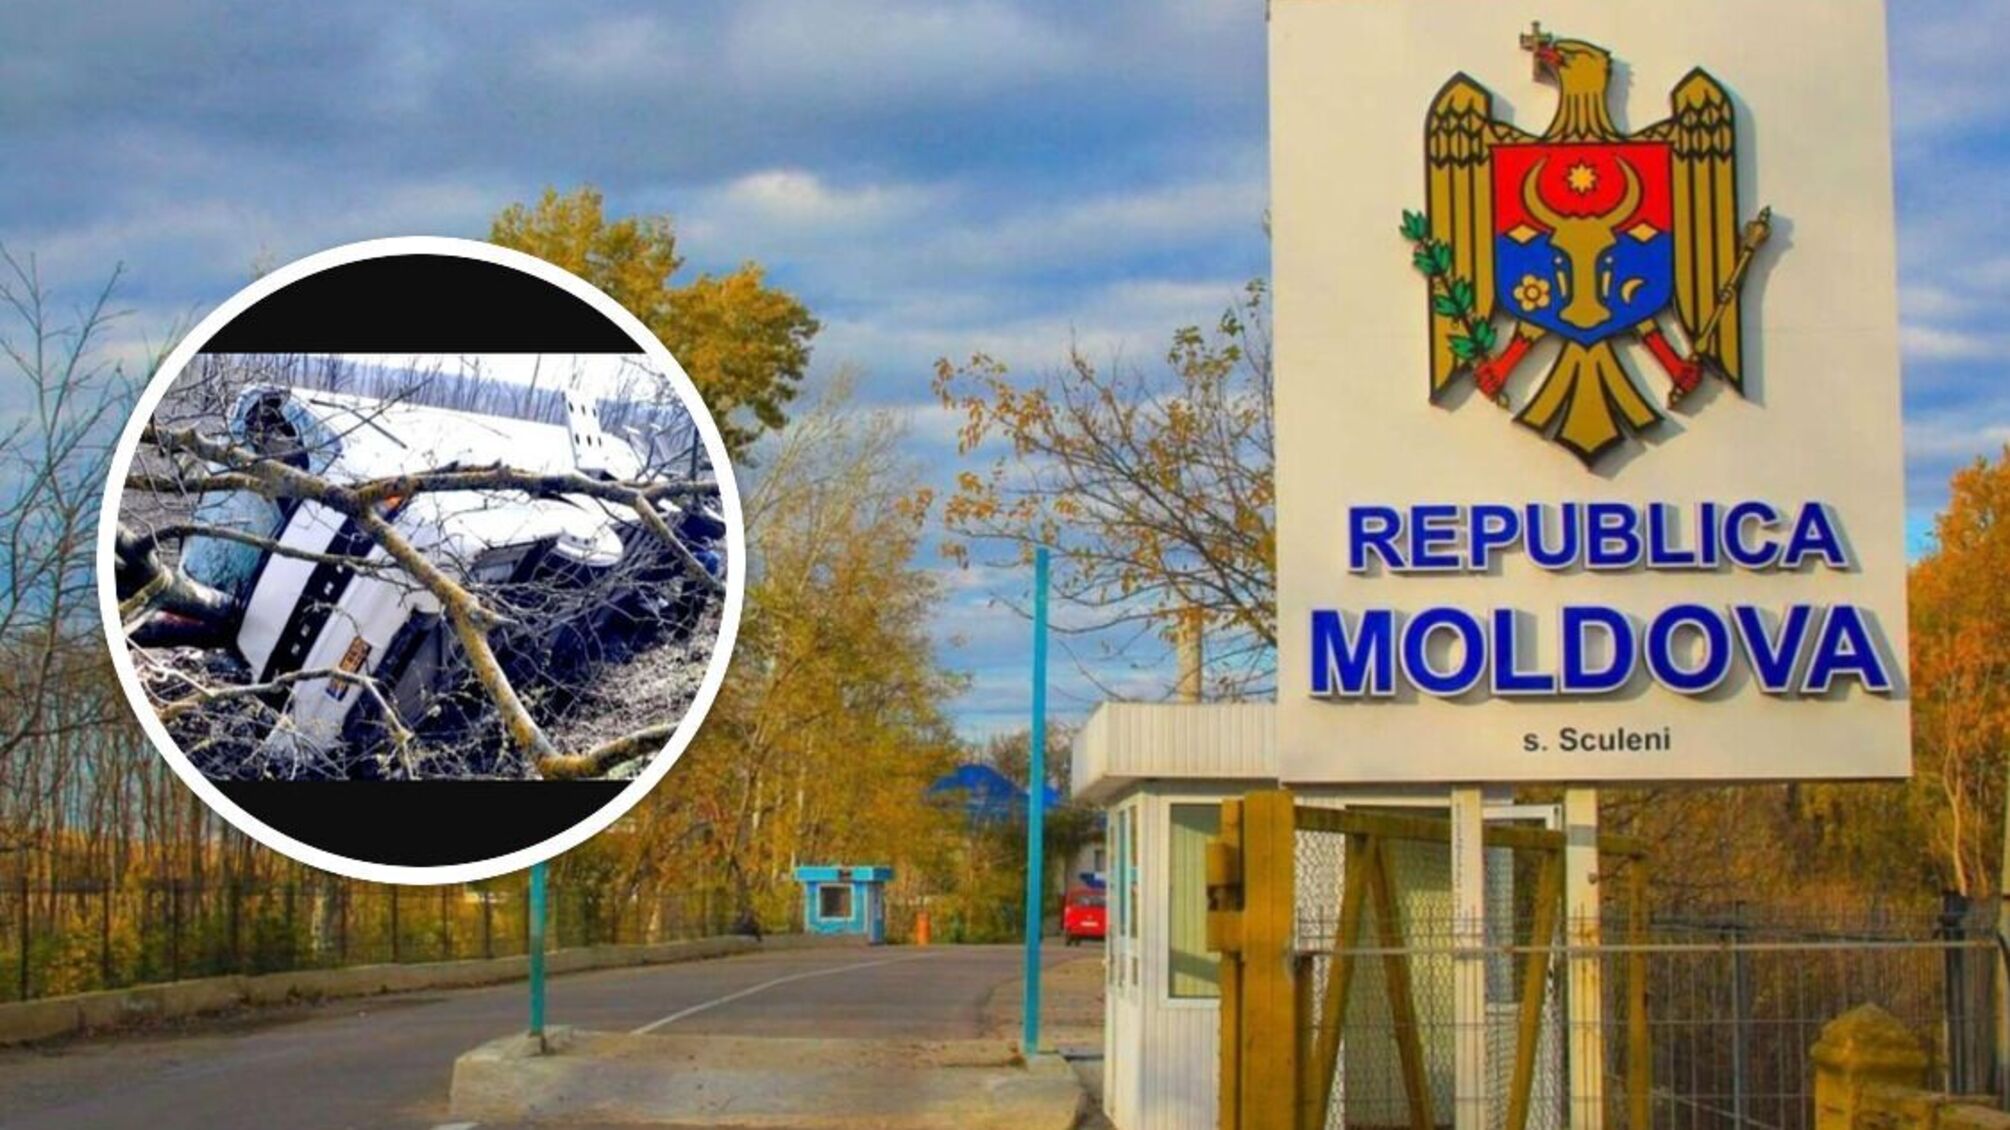 ДТП у Молдові: перевернувся рейсовий автобус з пасажирами, серед постраждалих є українці - деталі